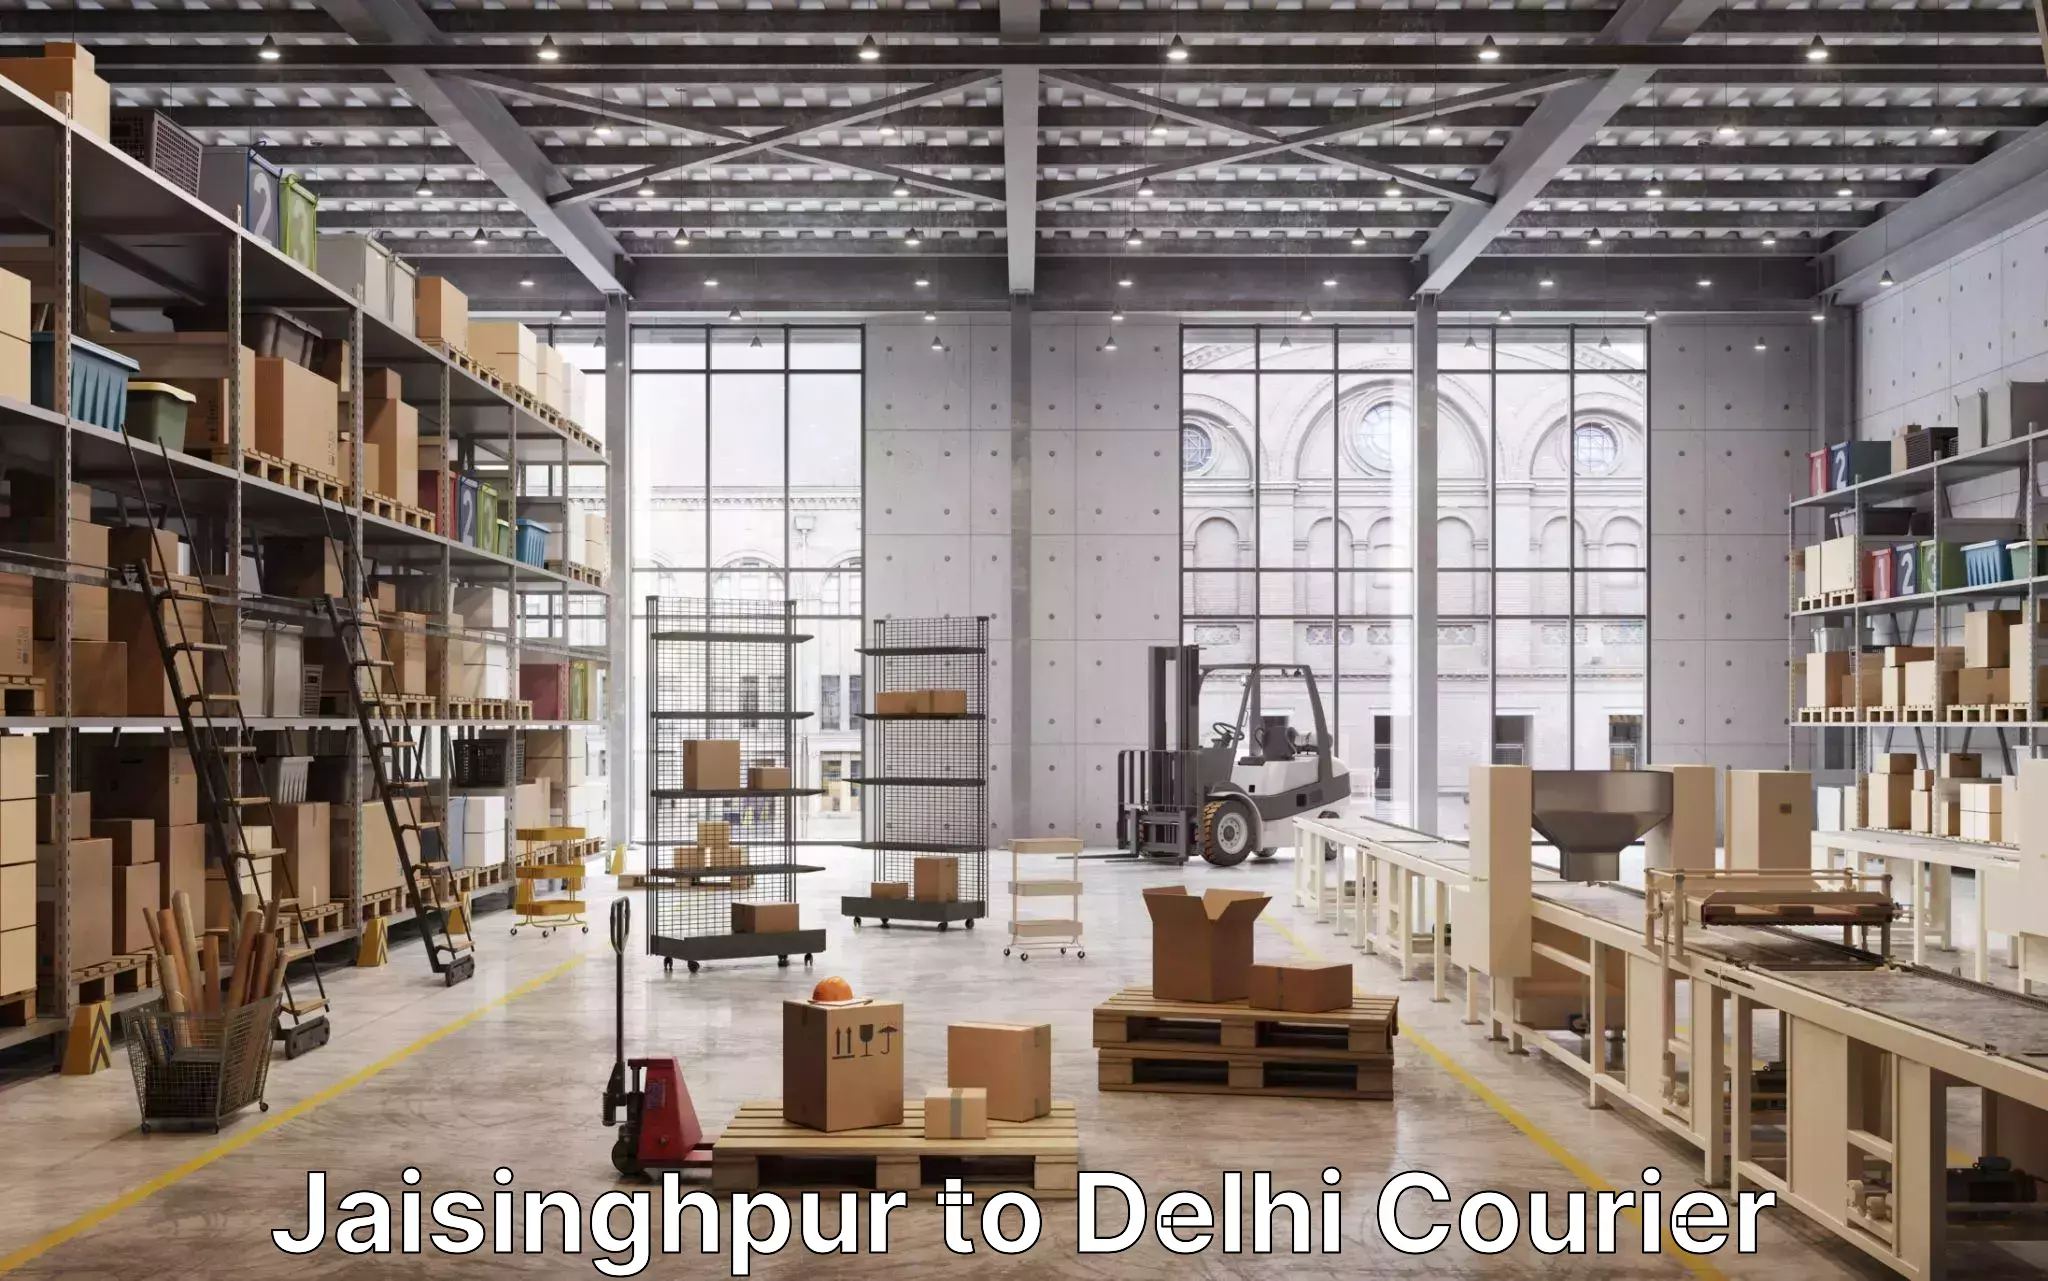 Residential moving experts Jaisinghpur to Delhi